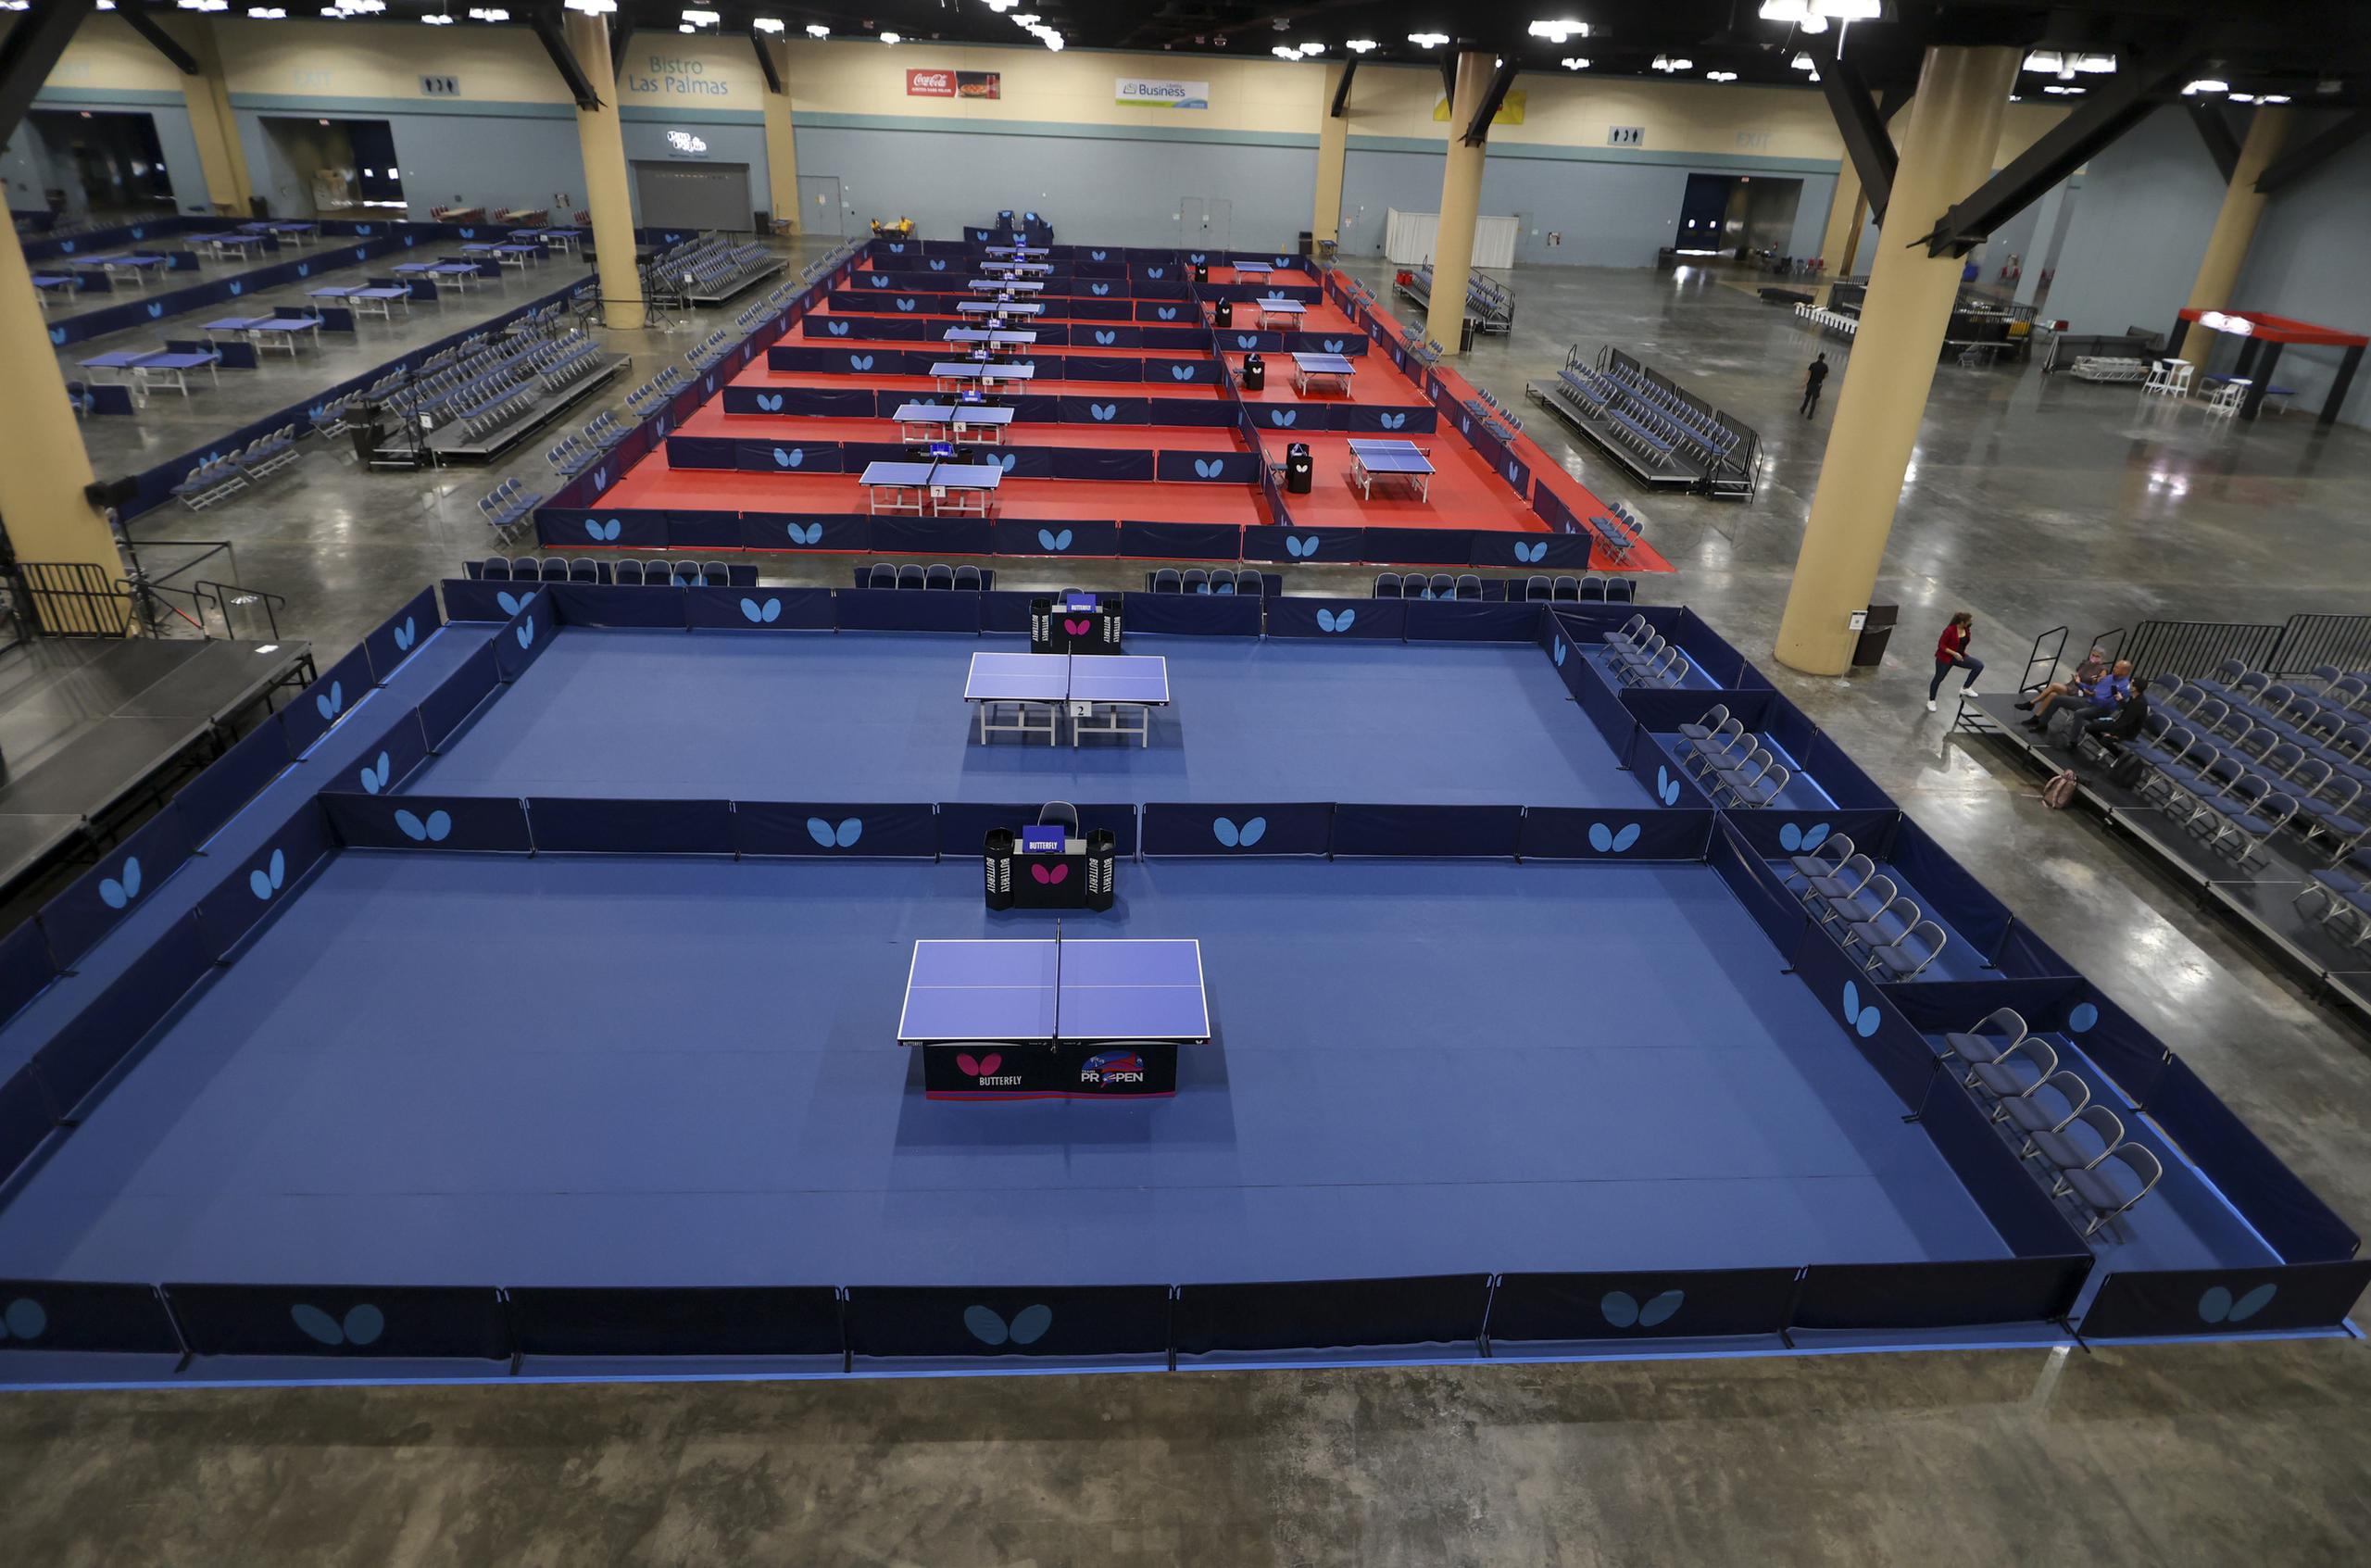 Así luce parte del escenario donde se realizará el torneo en el Centro de Convenciones. Allí hay montadas 75 mesas para la competencia.